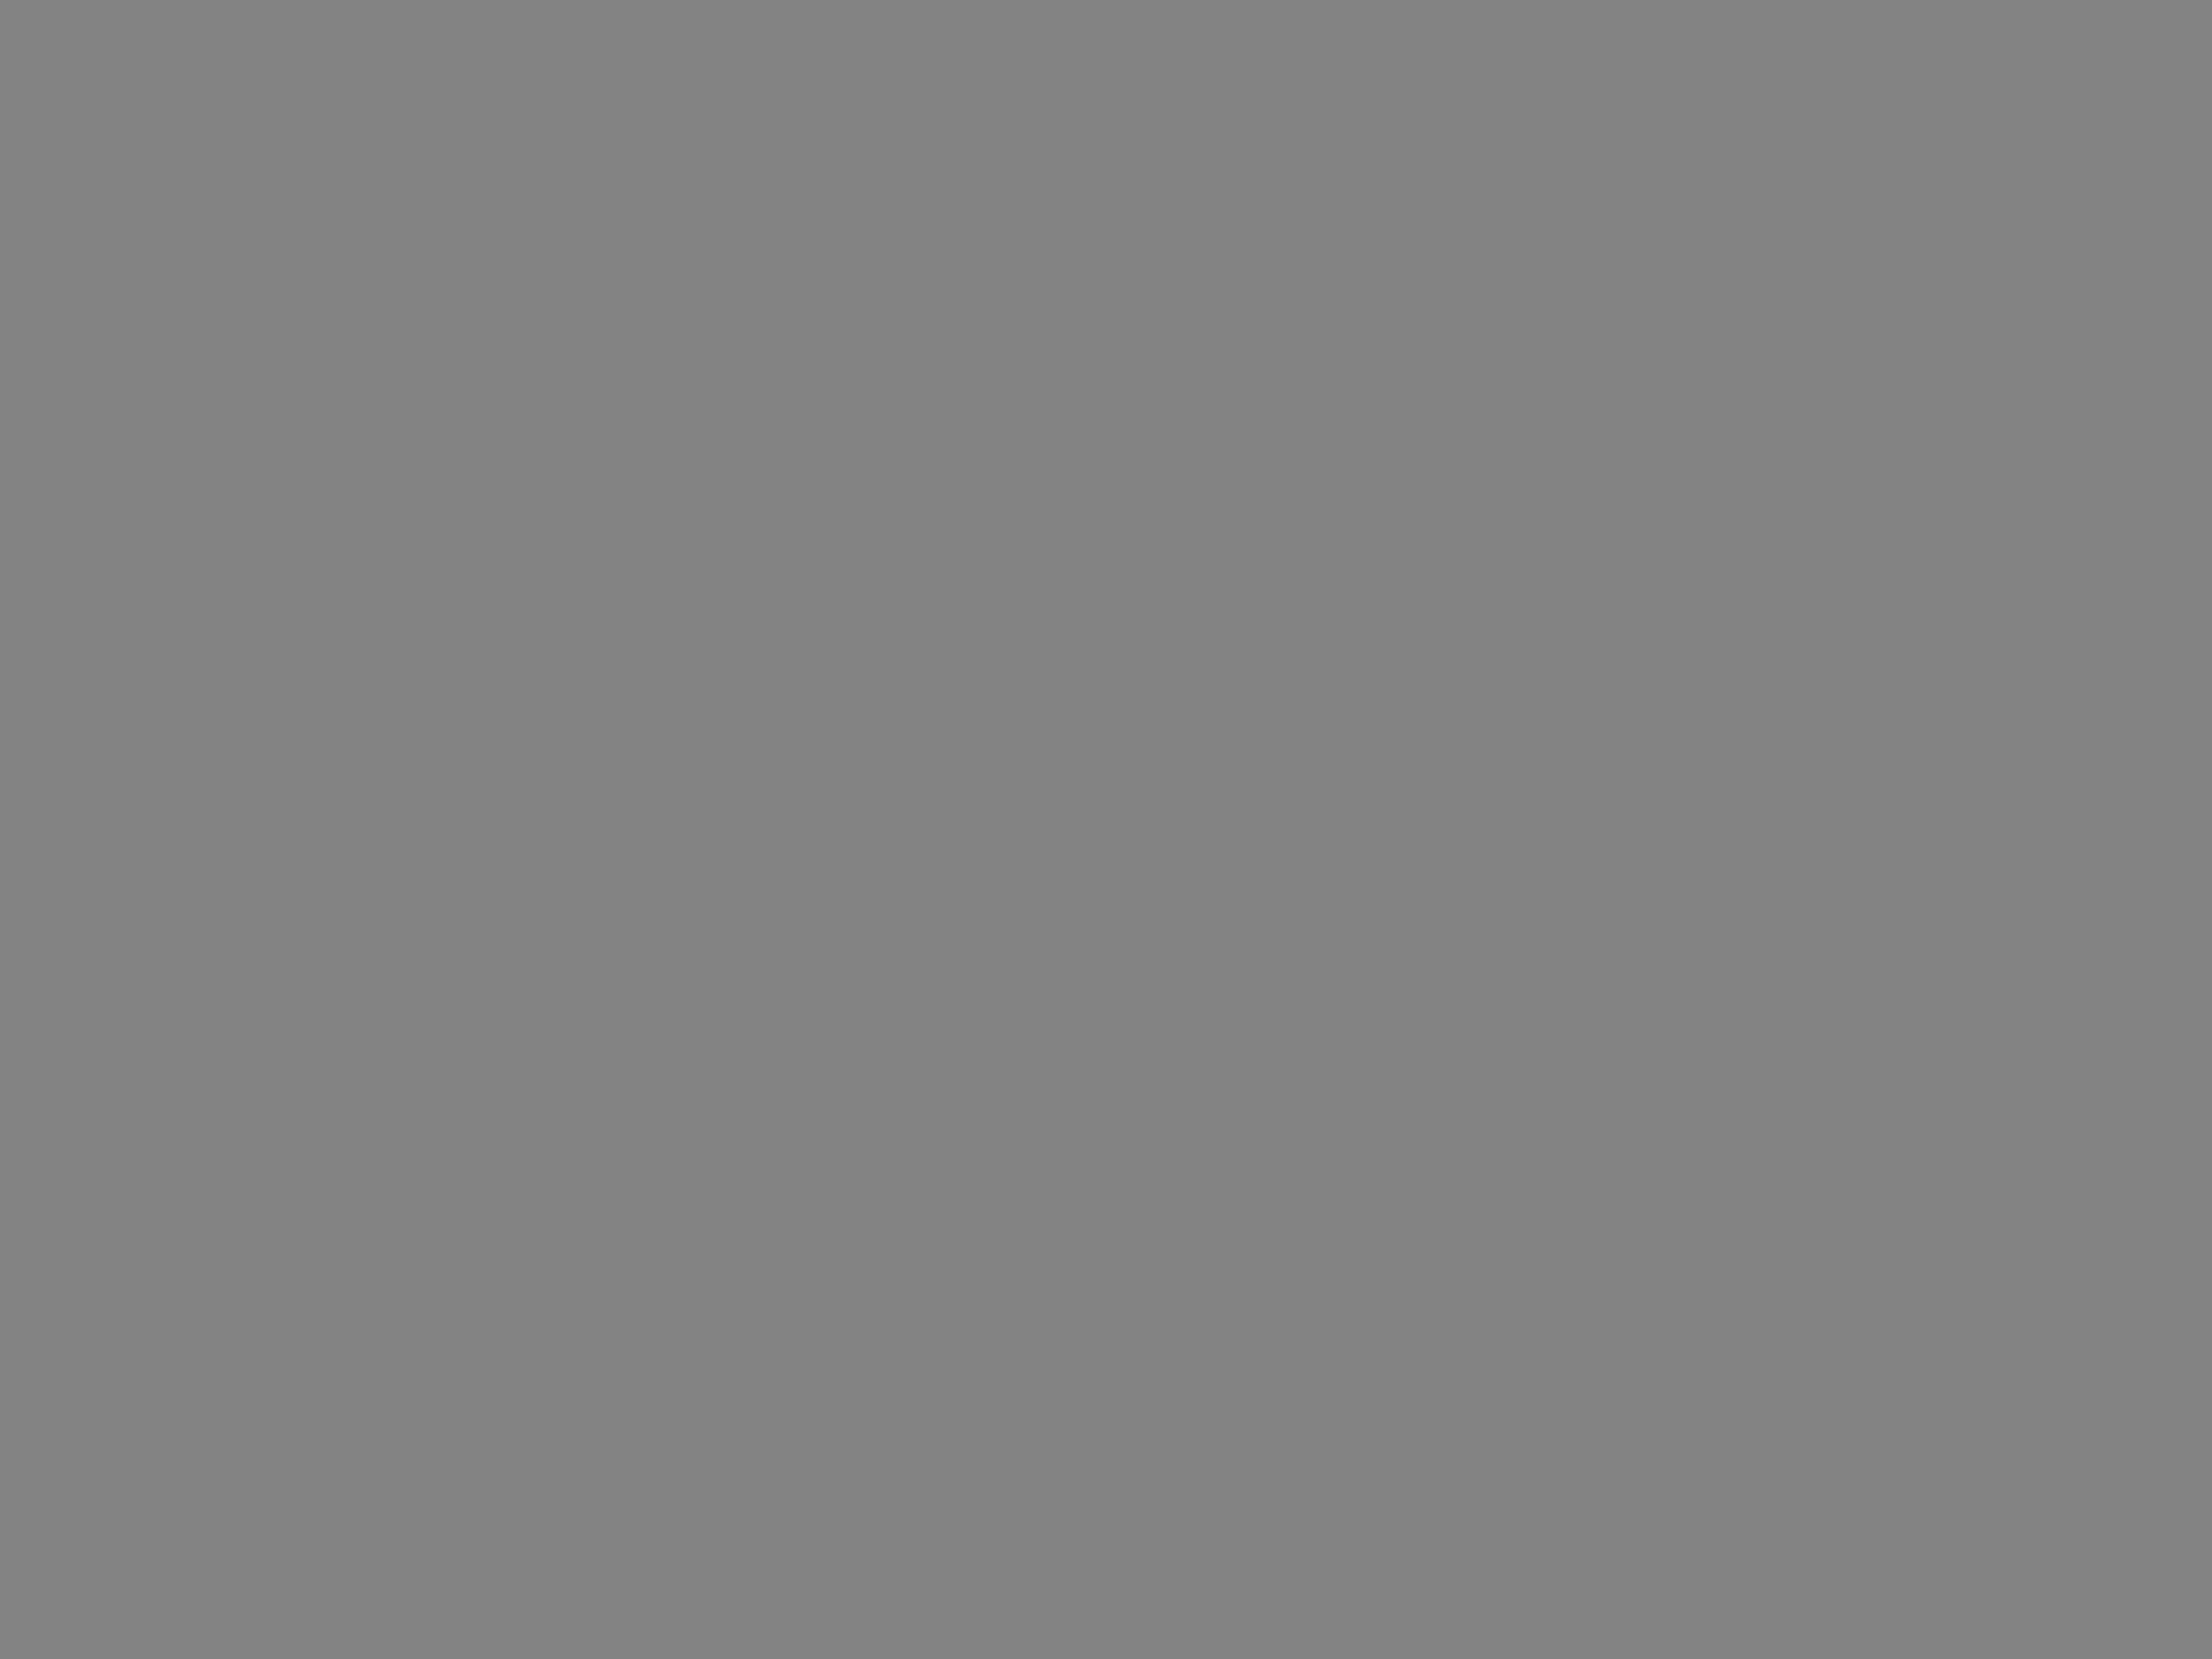 Актриса Вера Алентова на съемках художественного фильма Юлия Райзмана «Время желаний». Фотография: Николай Малышев / ТАСС